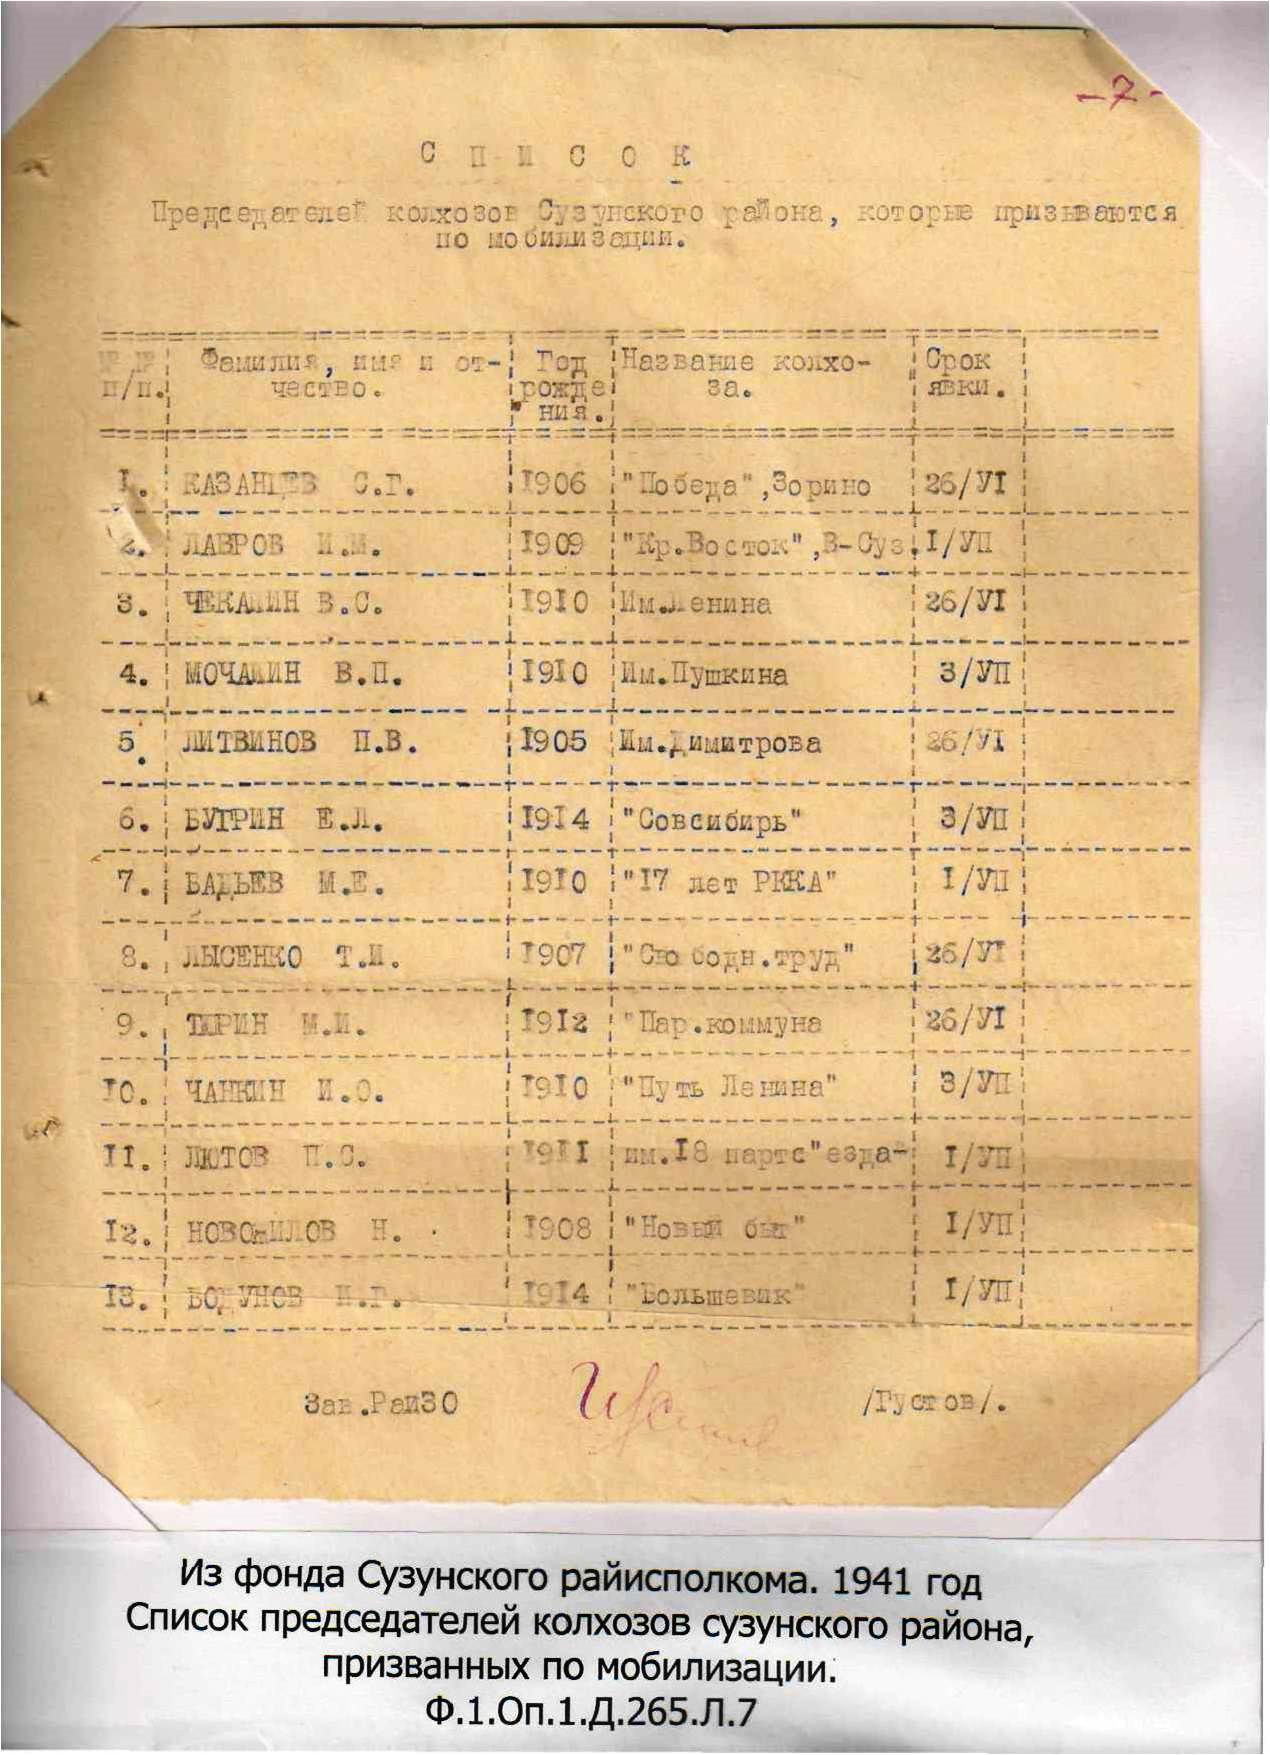 Список председателей колхозов Сузунского района, призванных по мобилизации в 1941 г..jpg